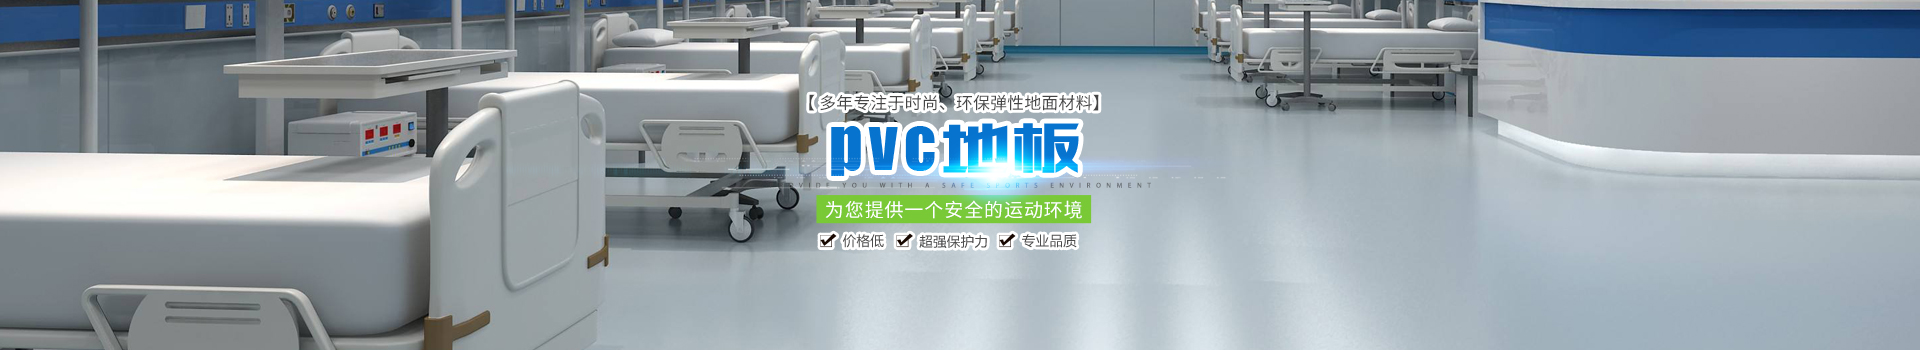 湖南正浦建材有限公司_PVC地板|長沙PVC地板|戶外運動場|塑膠地材